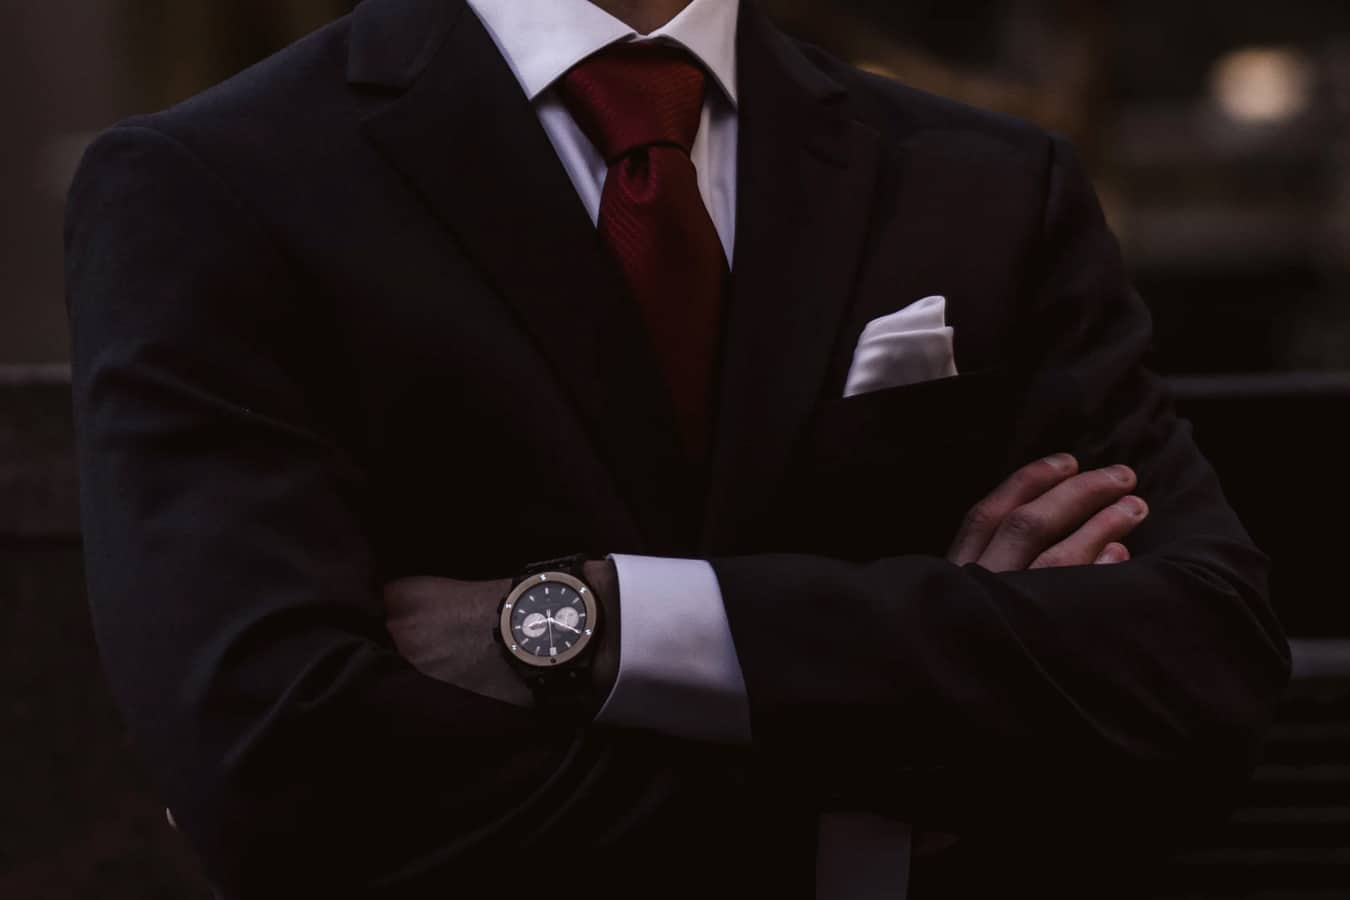 Foto do dorso de um homem de braços cruzados, ele usa um terno preto, grava vermelha e relógio no pulso.